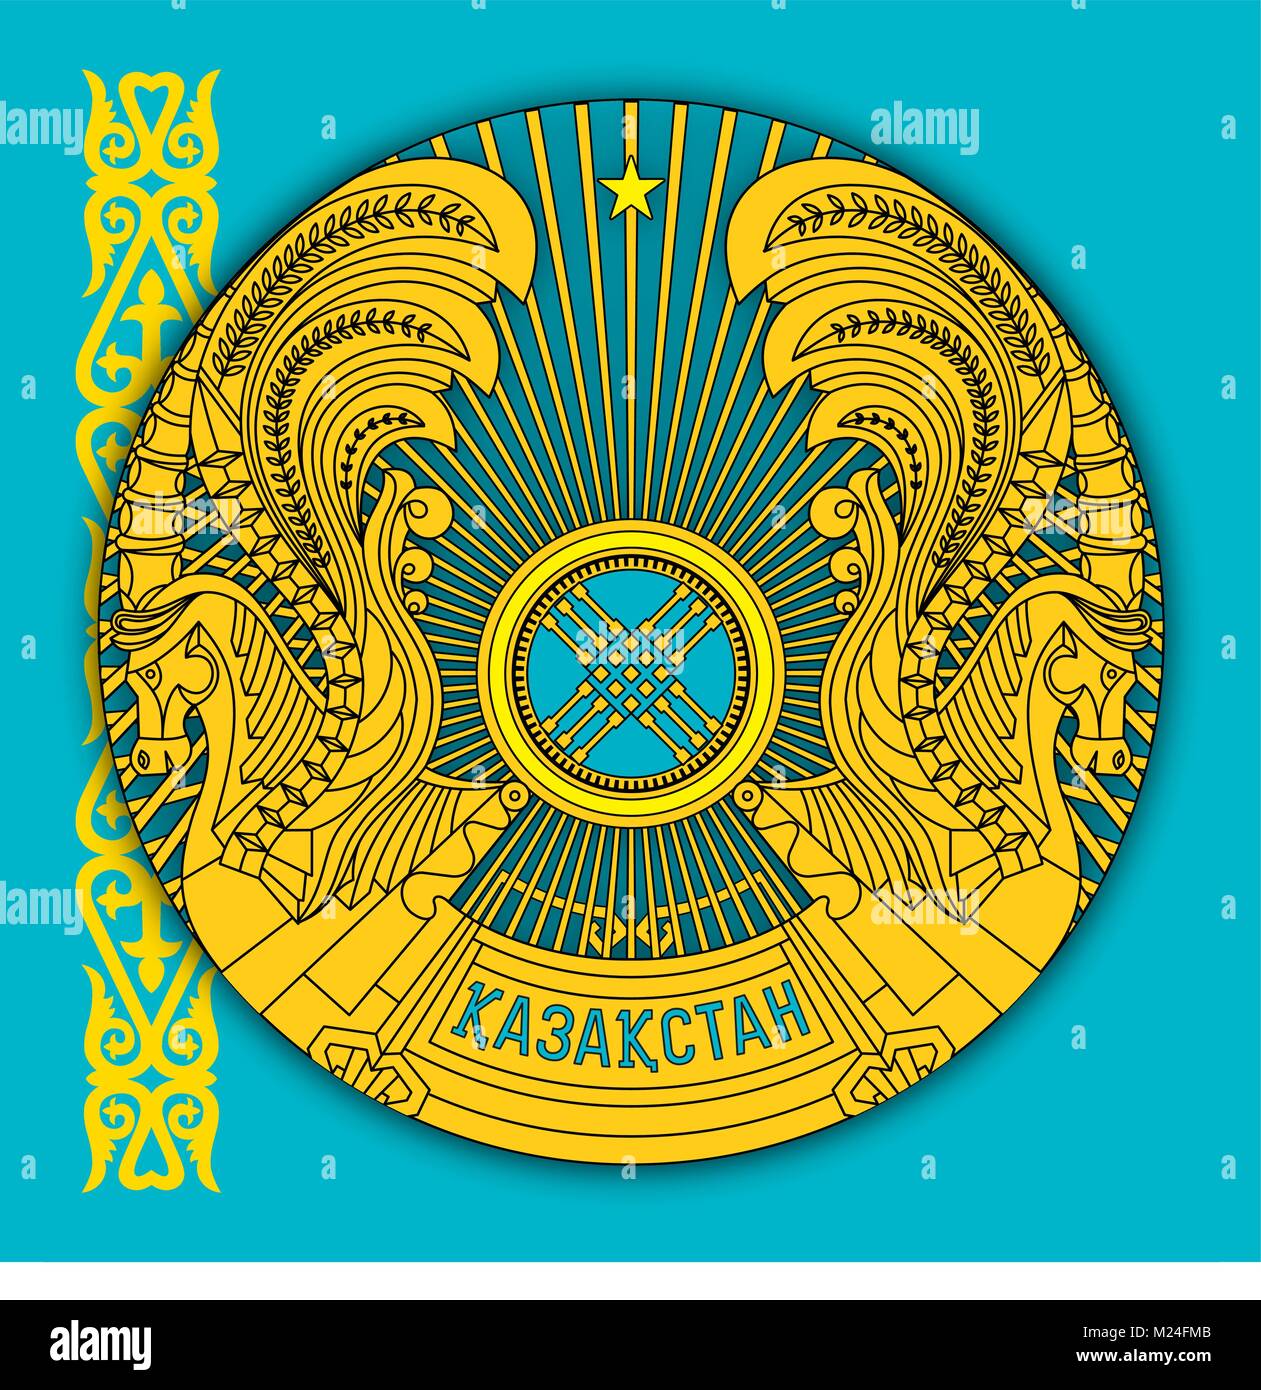 Kasachstan Wappen und Flagge, offiziellen Zeichen des Landes  Stock-Vektorgrafik - Alamy